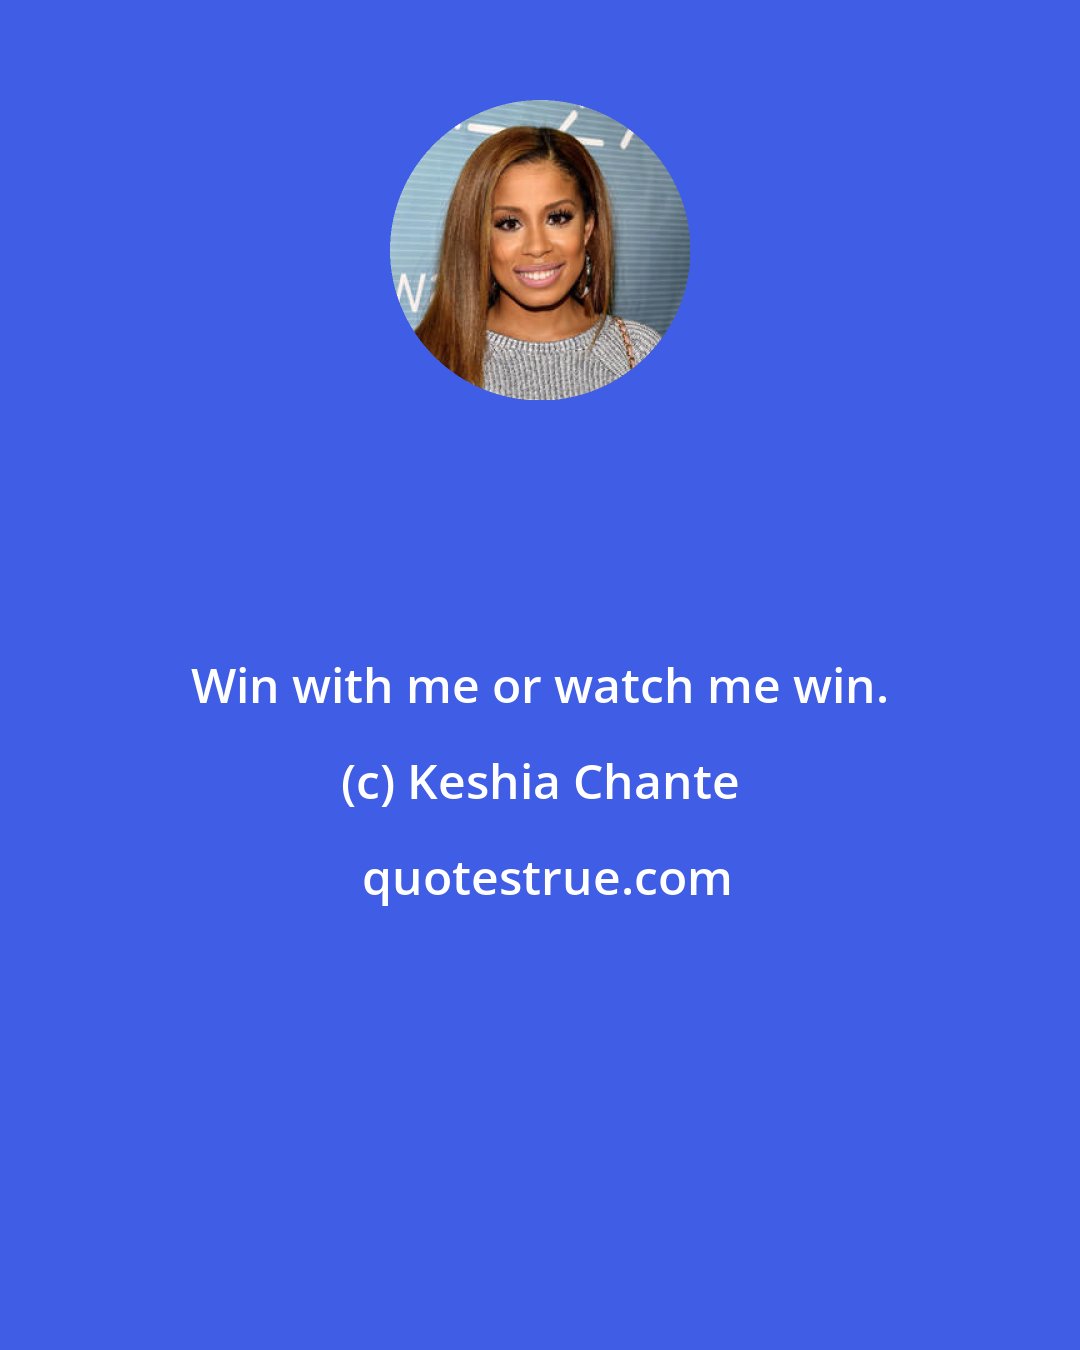 Keshia Chante: Win with me or watch me win.